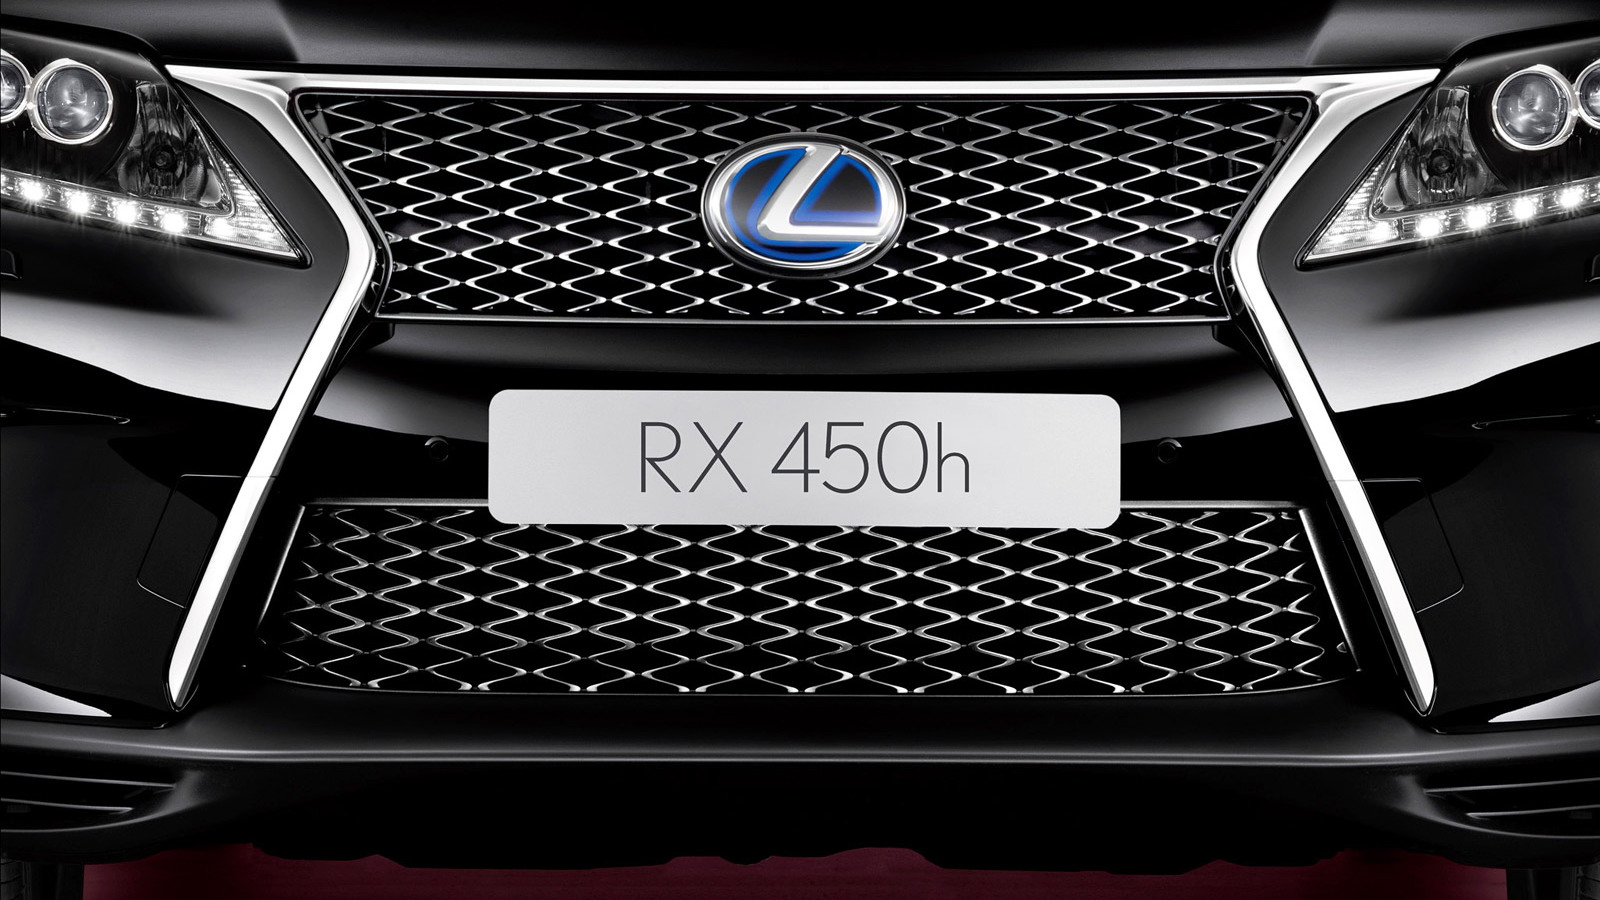 2013 Lexus RX 450h teaser